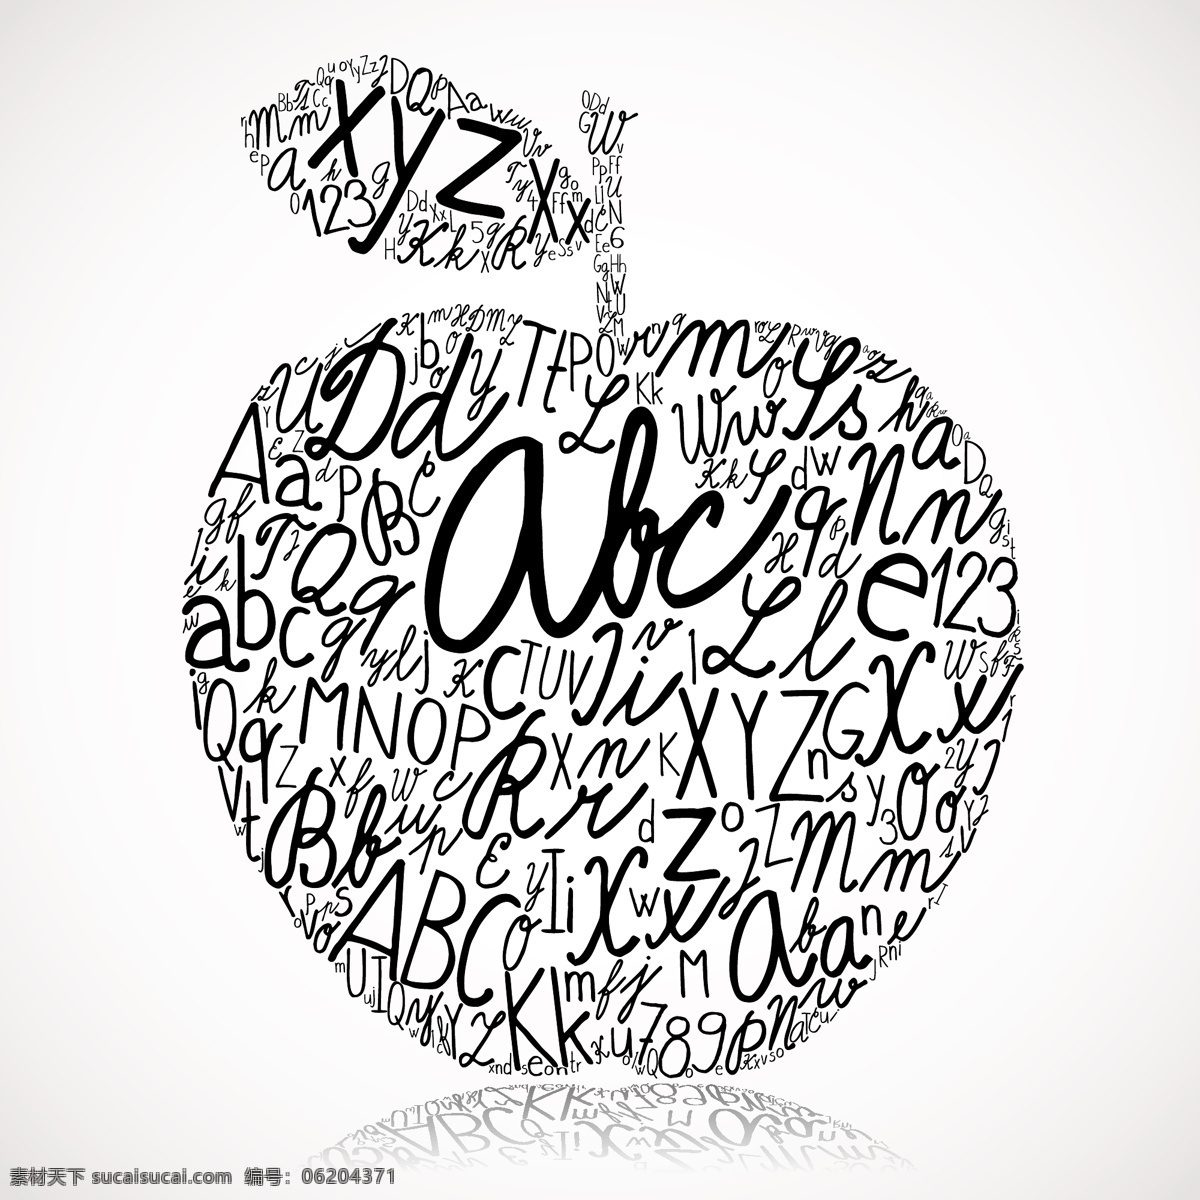 苹果字母拼贴 字体设计 抽象 图形 创意 艺术 设计素材 矢量 苹果 拼贴 倒影 流行元素 底纹边框 矢量素材 白色